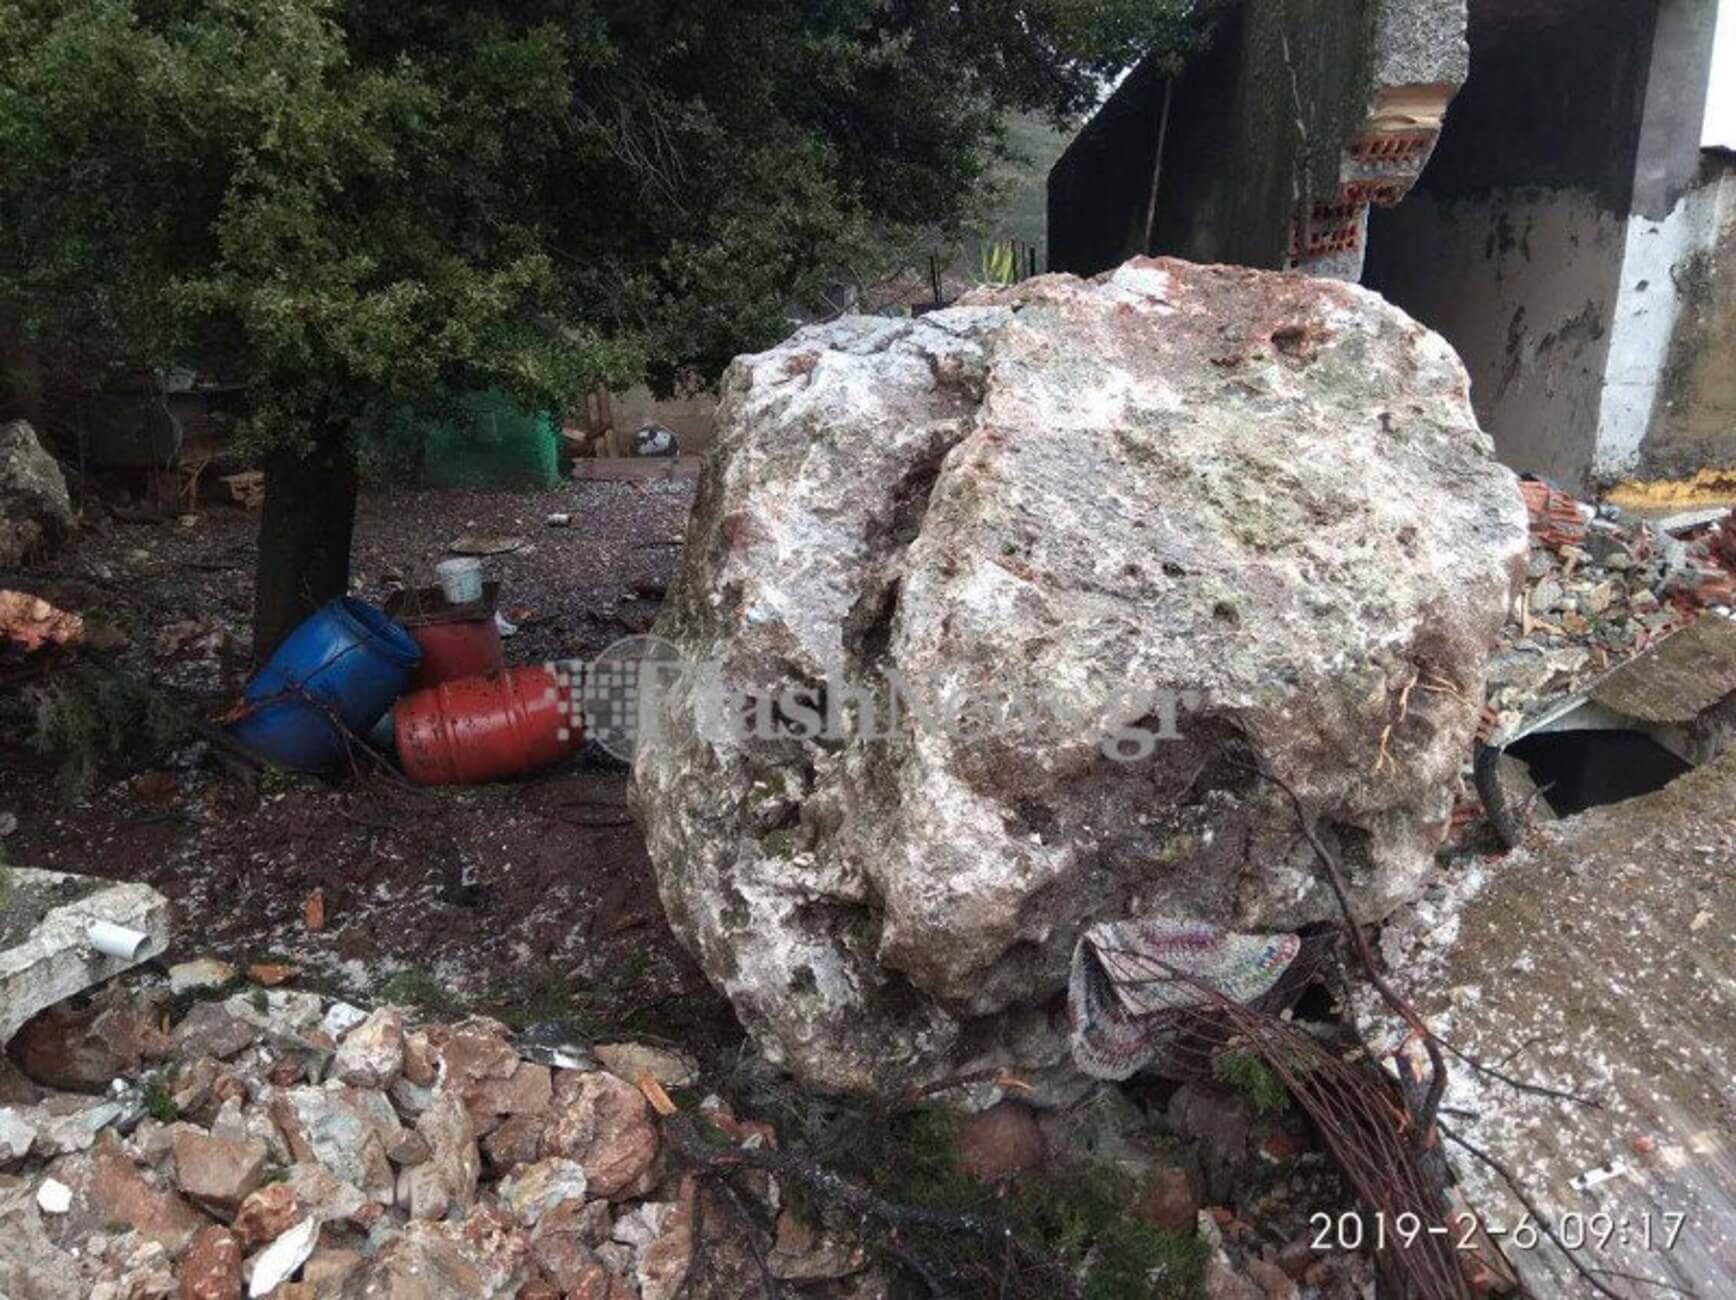 Σφακιά: Αυτός είναι ο βράχος των 25 τόνων που διέλυσε σπίτι – Τρόμος για γυναίκα που βρισκόταν μέσα [pics]